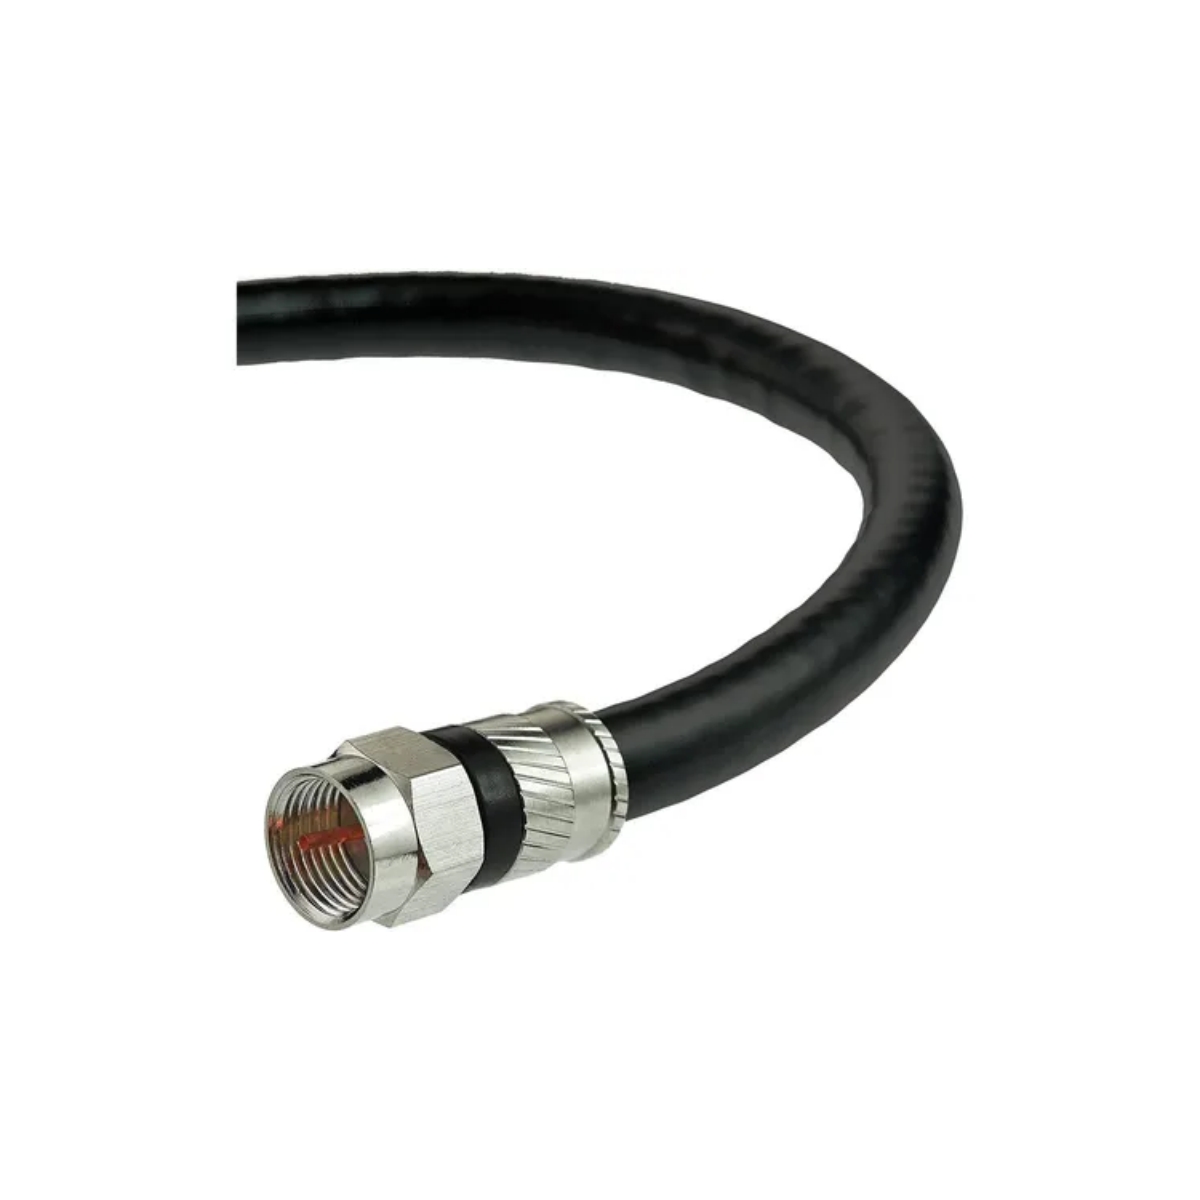 Cable Coaxial Negro Especial con Conector RG6